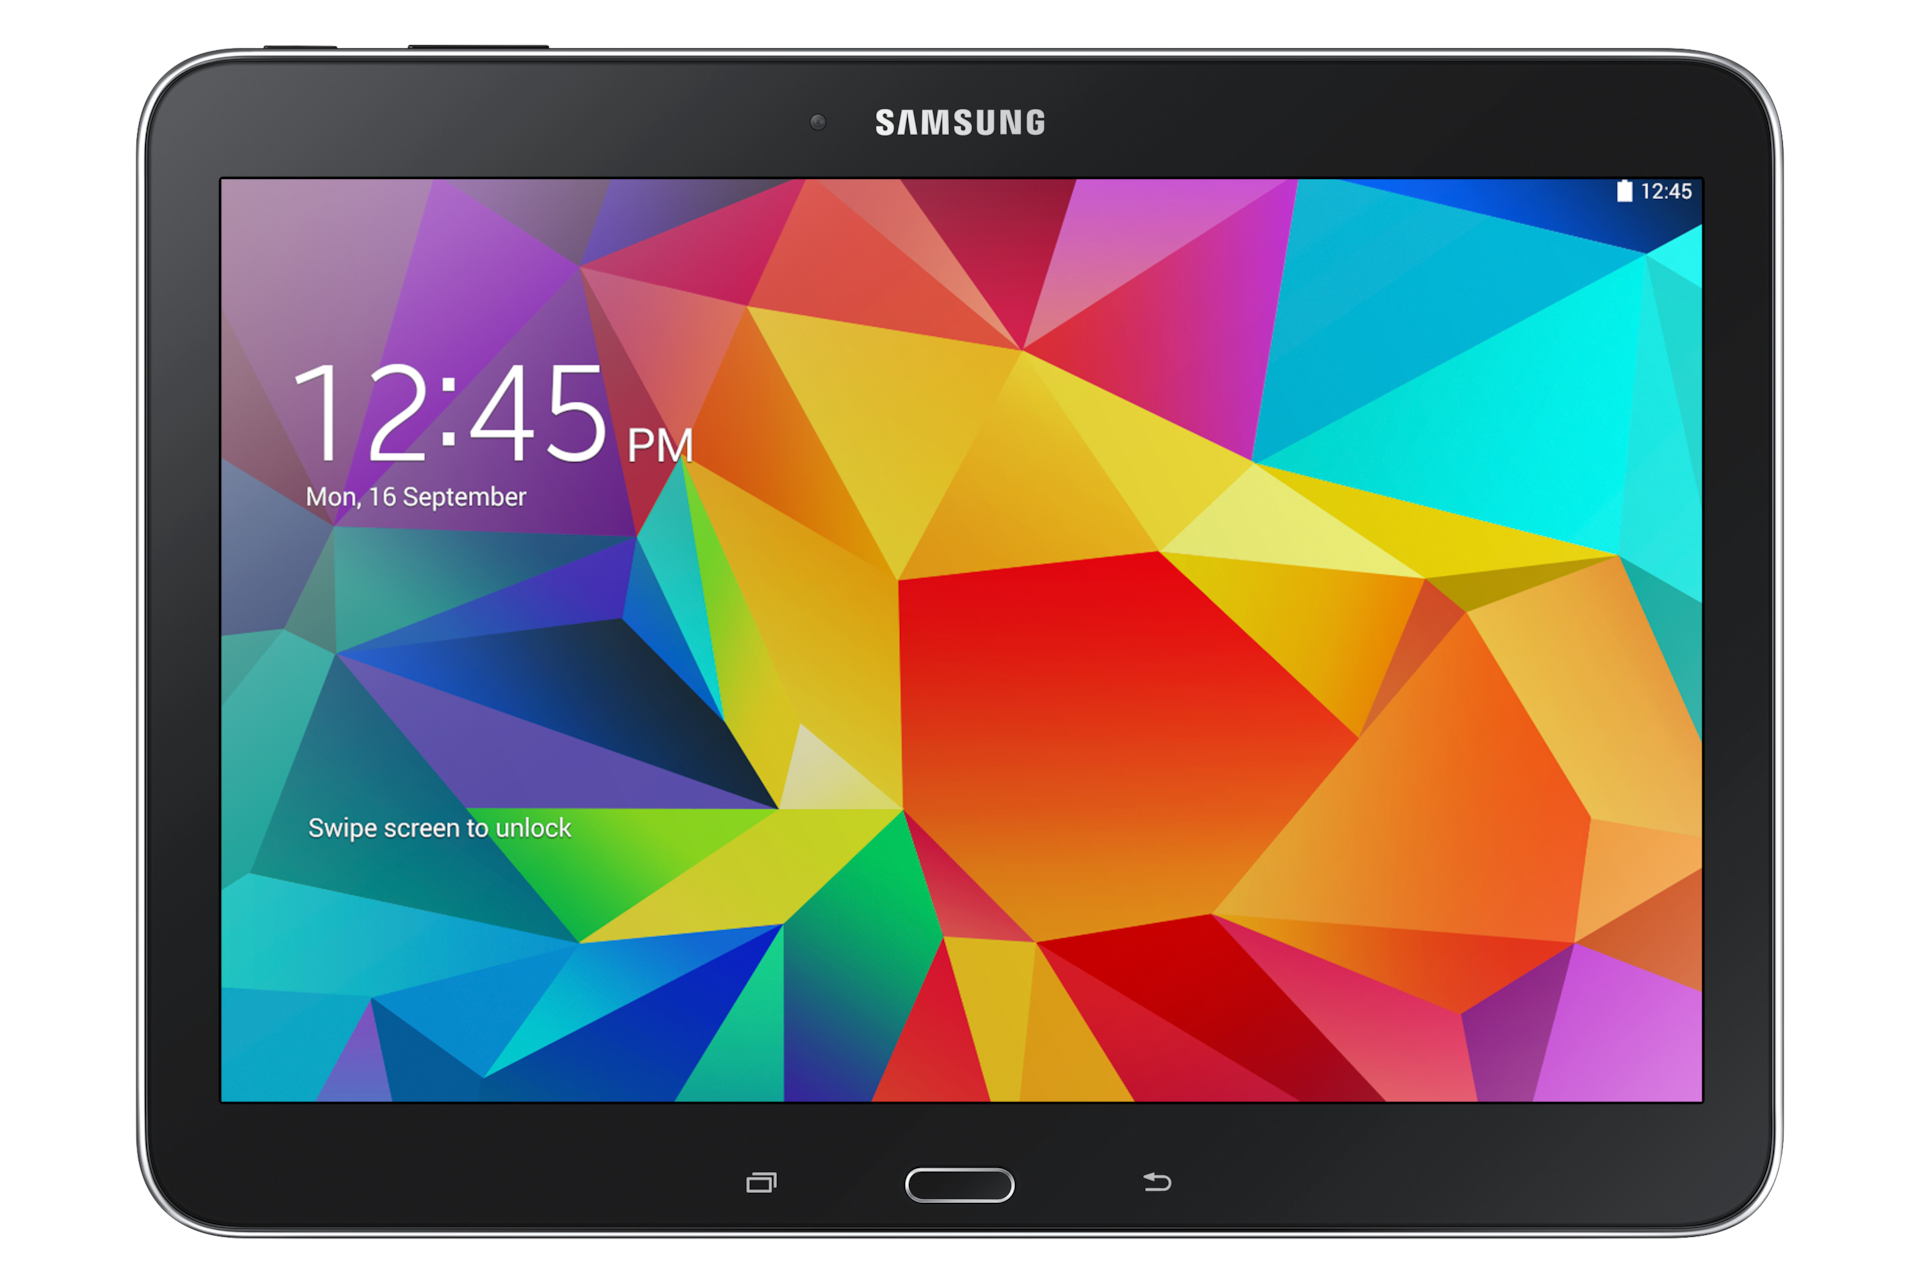 galaxy-tab-4-10-1-wi-fi-tablet-enjoy-amazing-screen-quality-samsung-uk